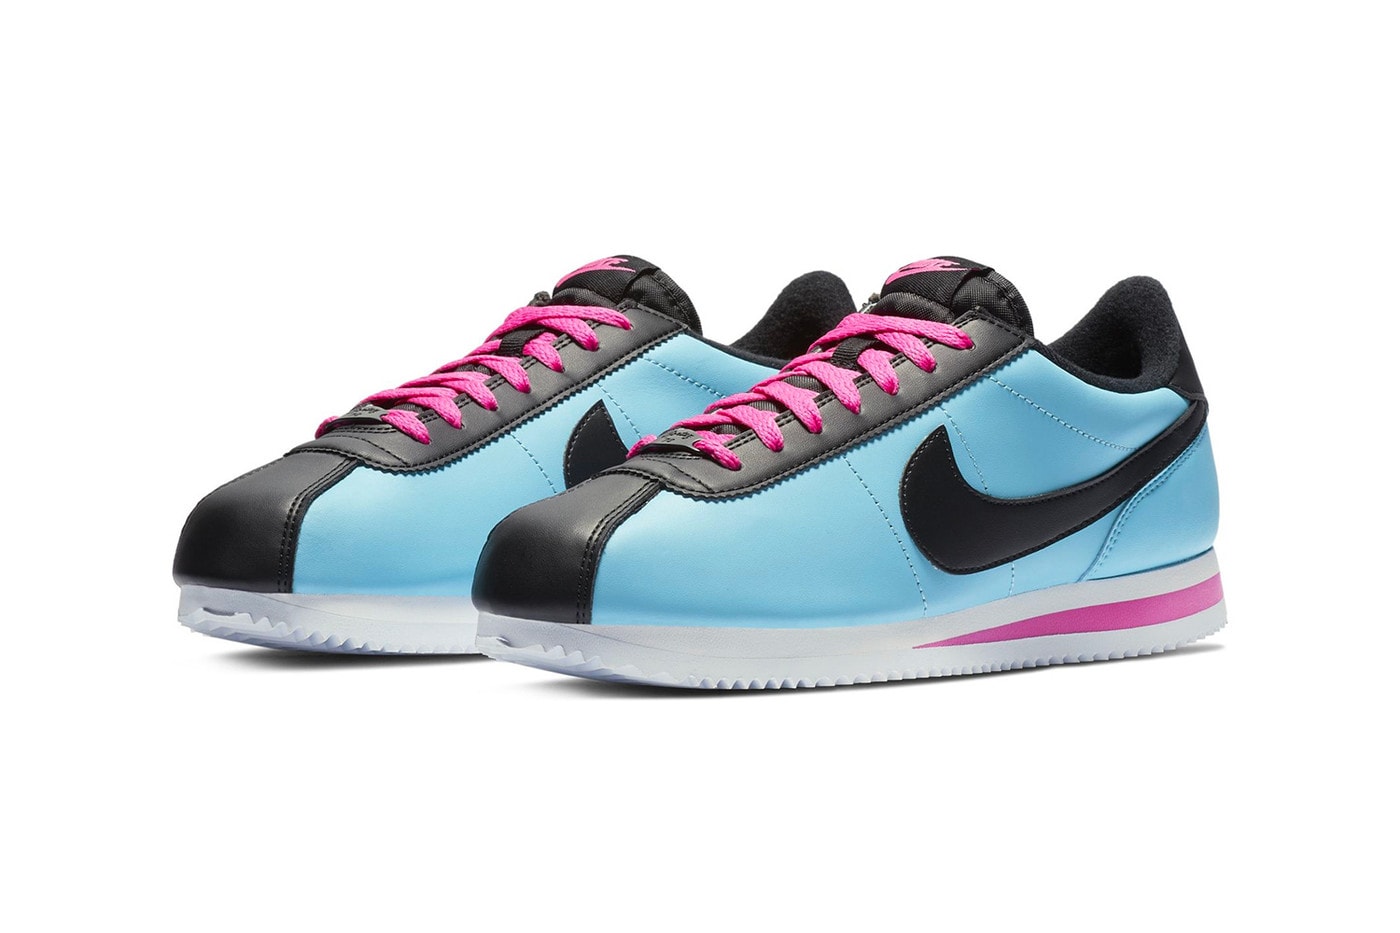 Nike Cortez Blue Gale/Laser Fuchsia White/Black Sneaker Blue Pink Shoe Footwear Fall Winter Trainer Crep